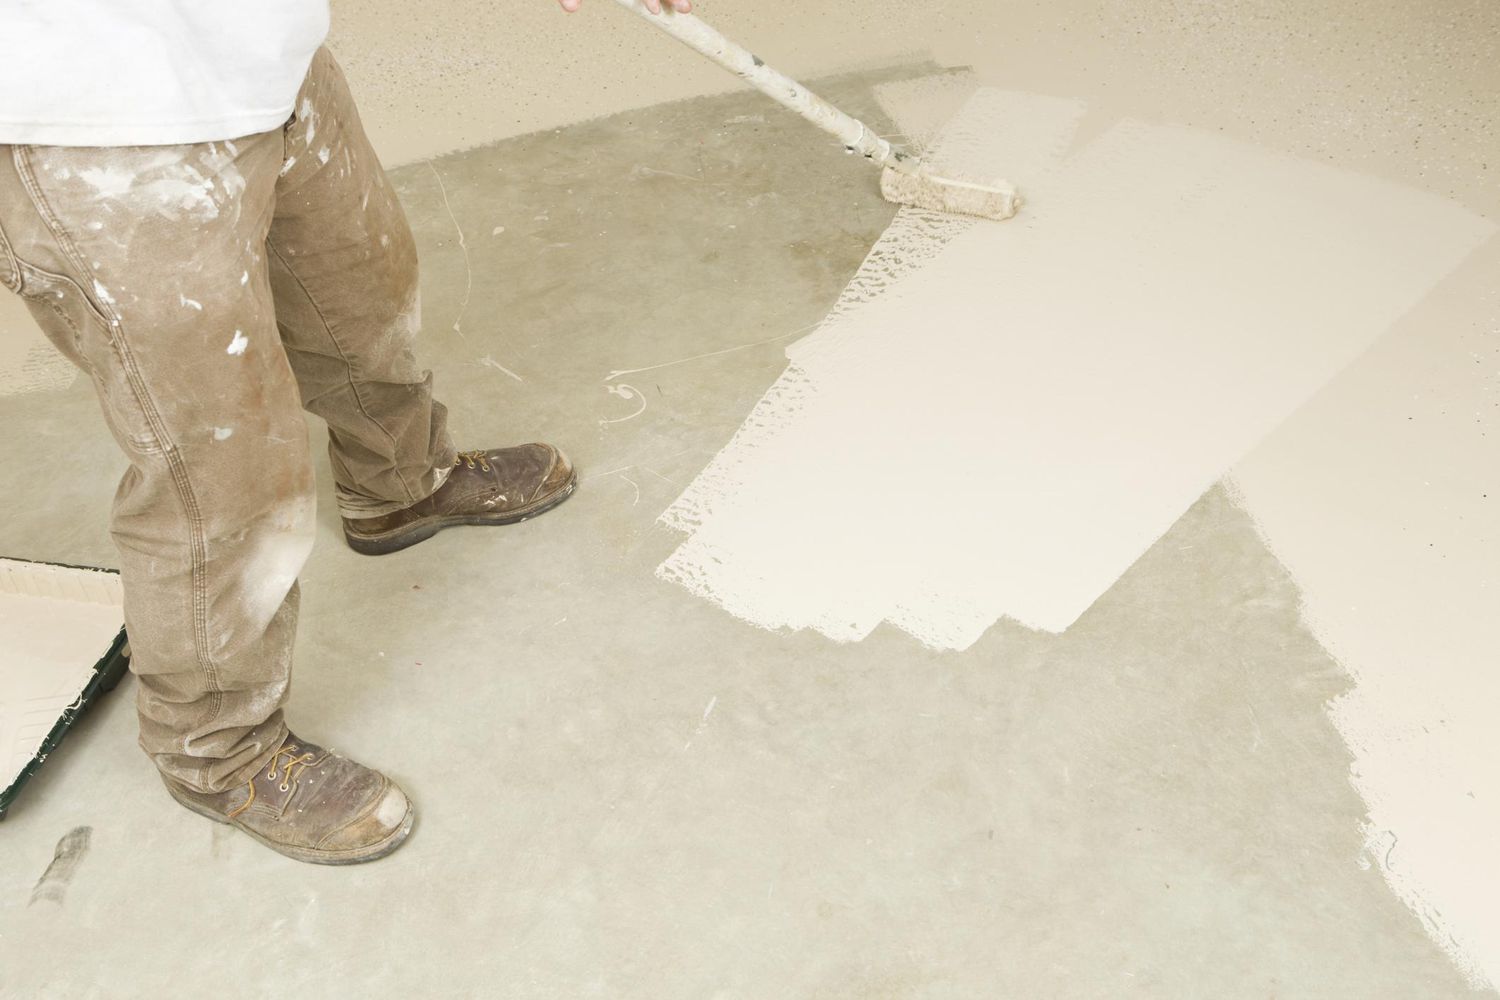 Maler rollt Epoxidfarbe auf Betonboden